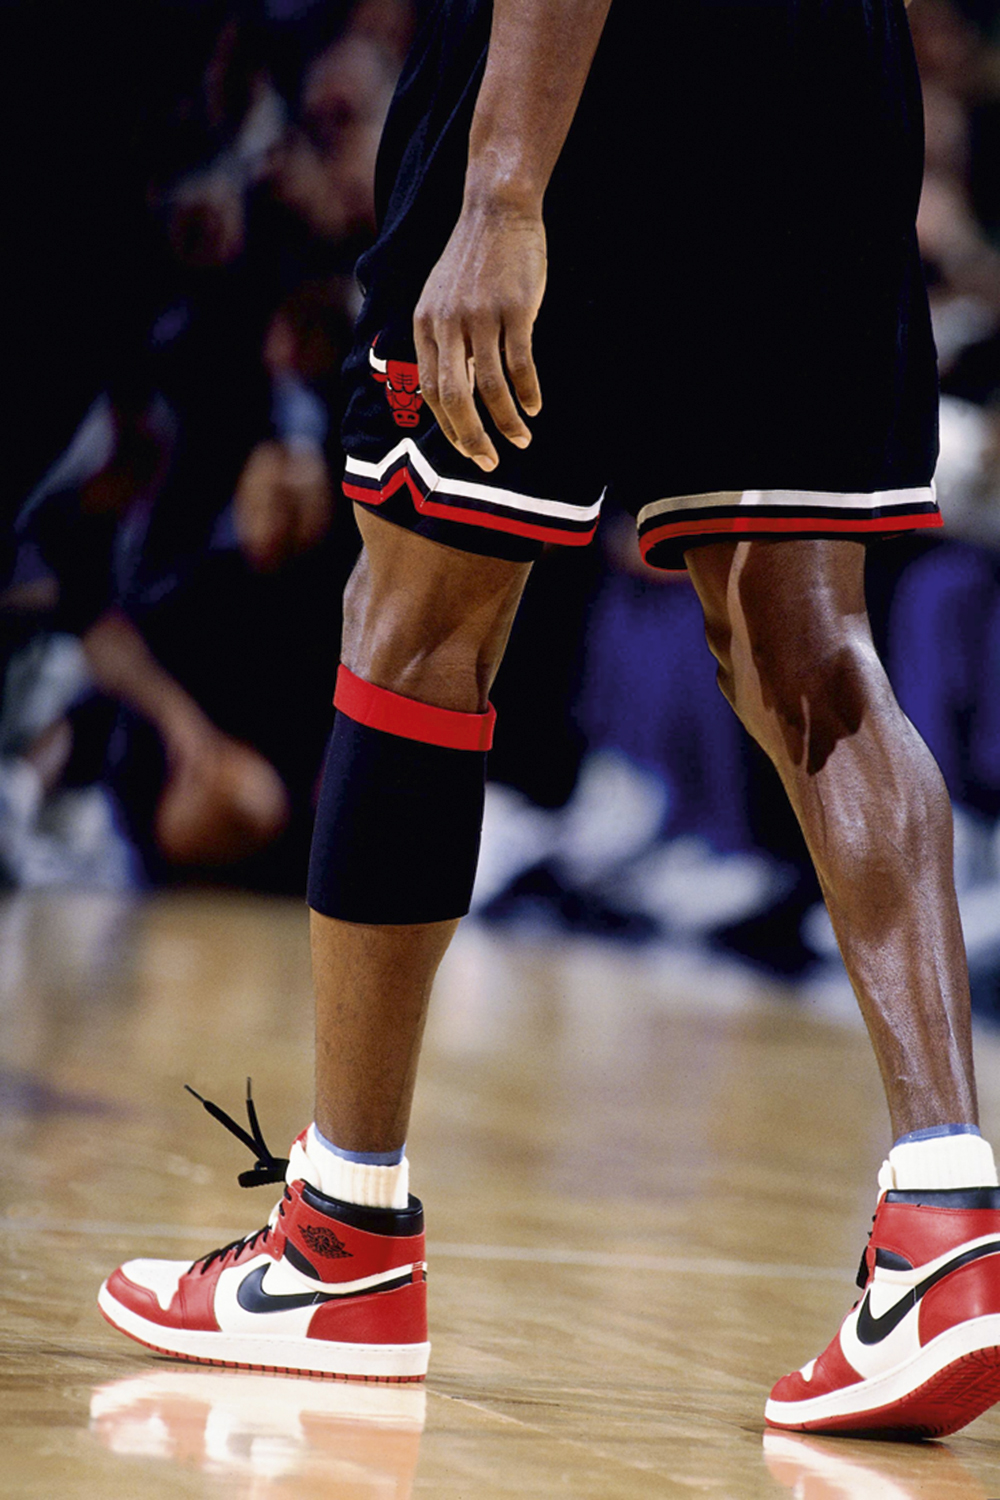 NIKE - 18º LUGAR - Única grife esportiva do rol, é desejada principalmente pela linha Air Jordan, que, em 2022, faturou mais de 5 bilhões de dólares e surfou na onda do filme de Ben Affleck sobre os produtos inspirados no astro Michael Jordan.